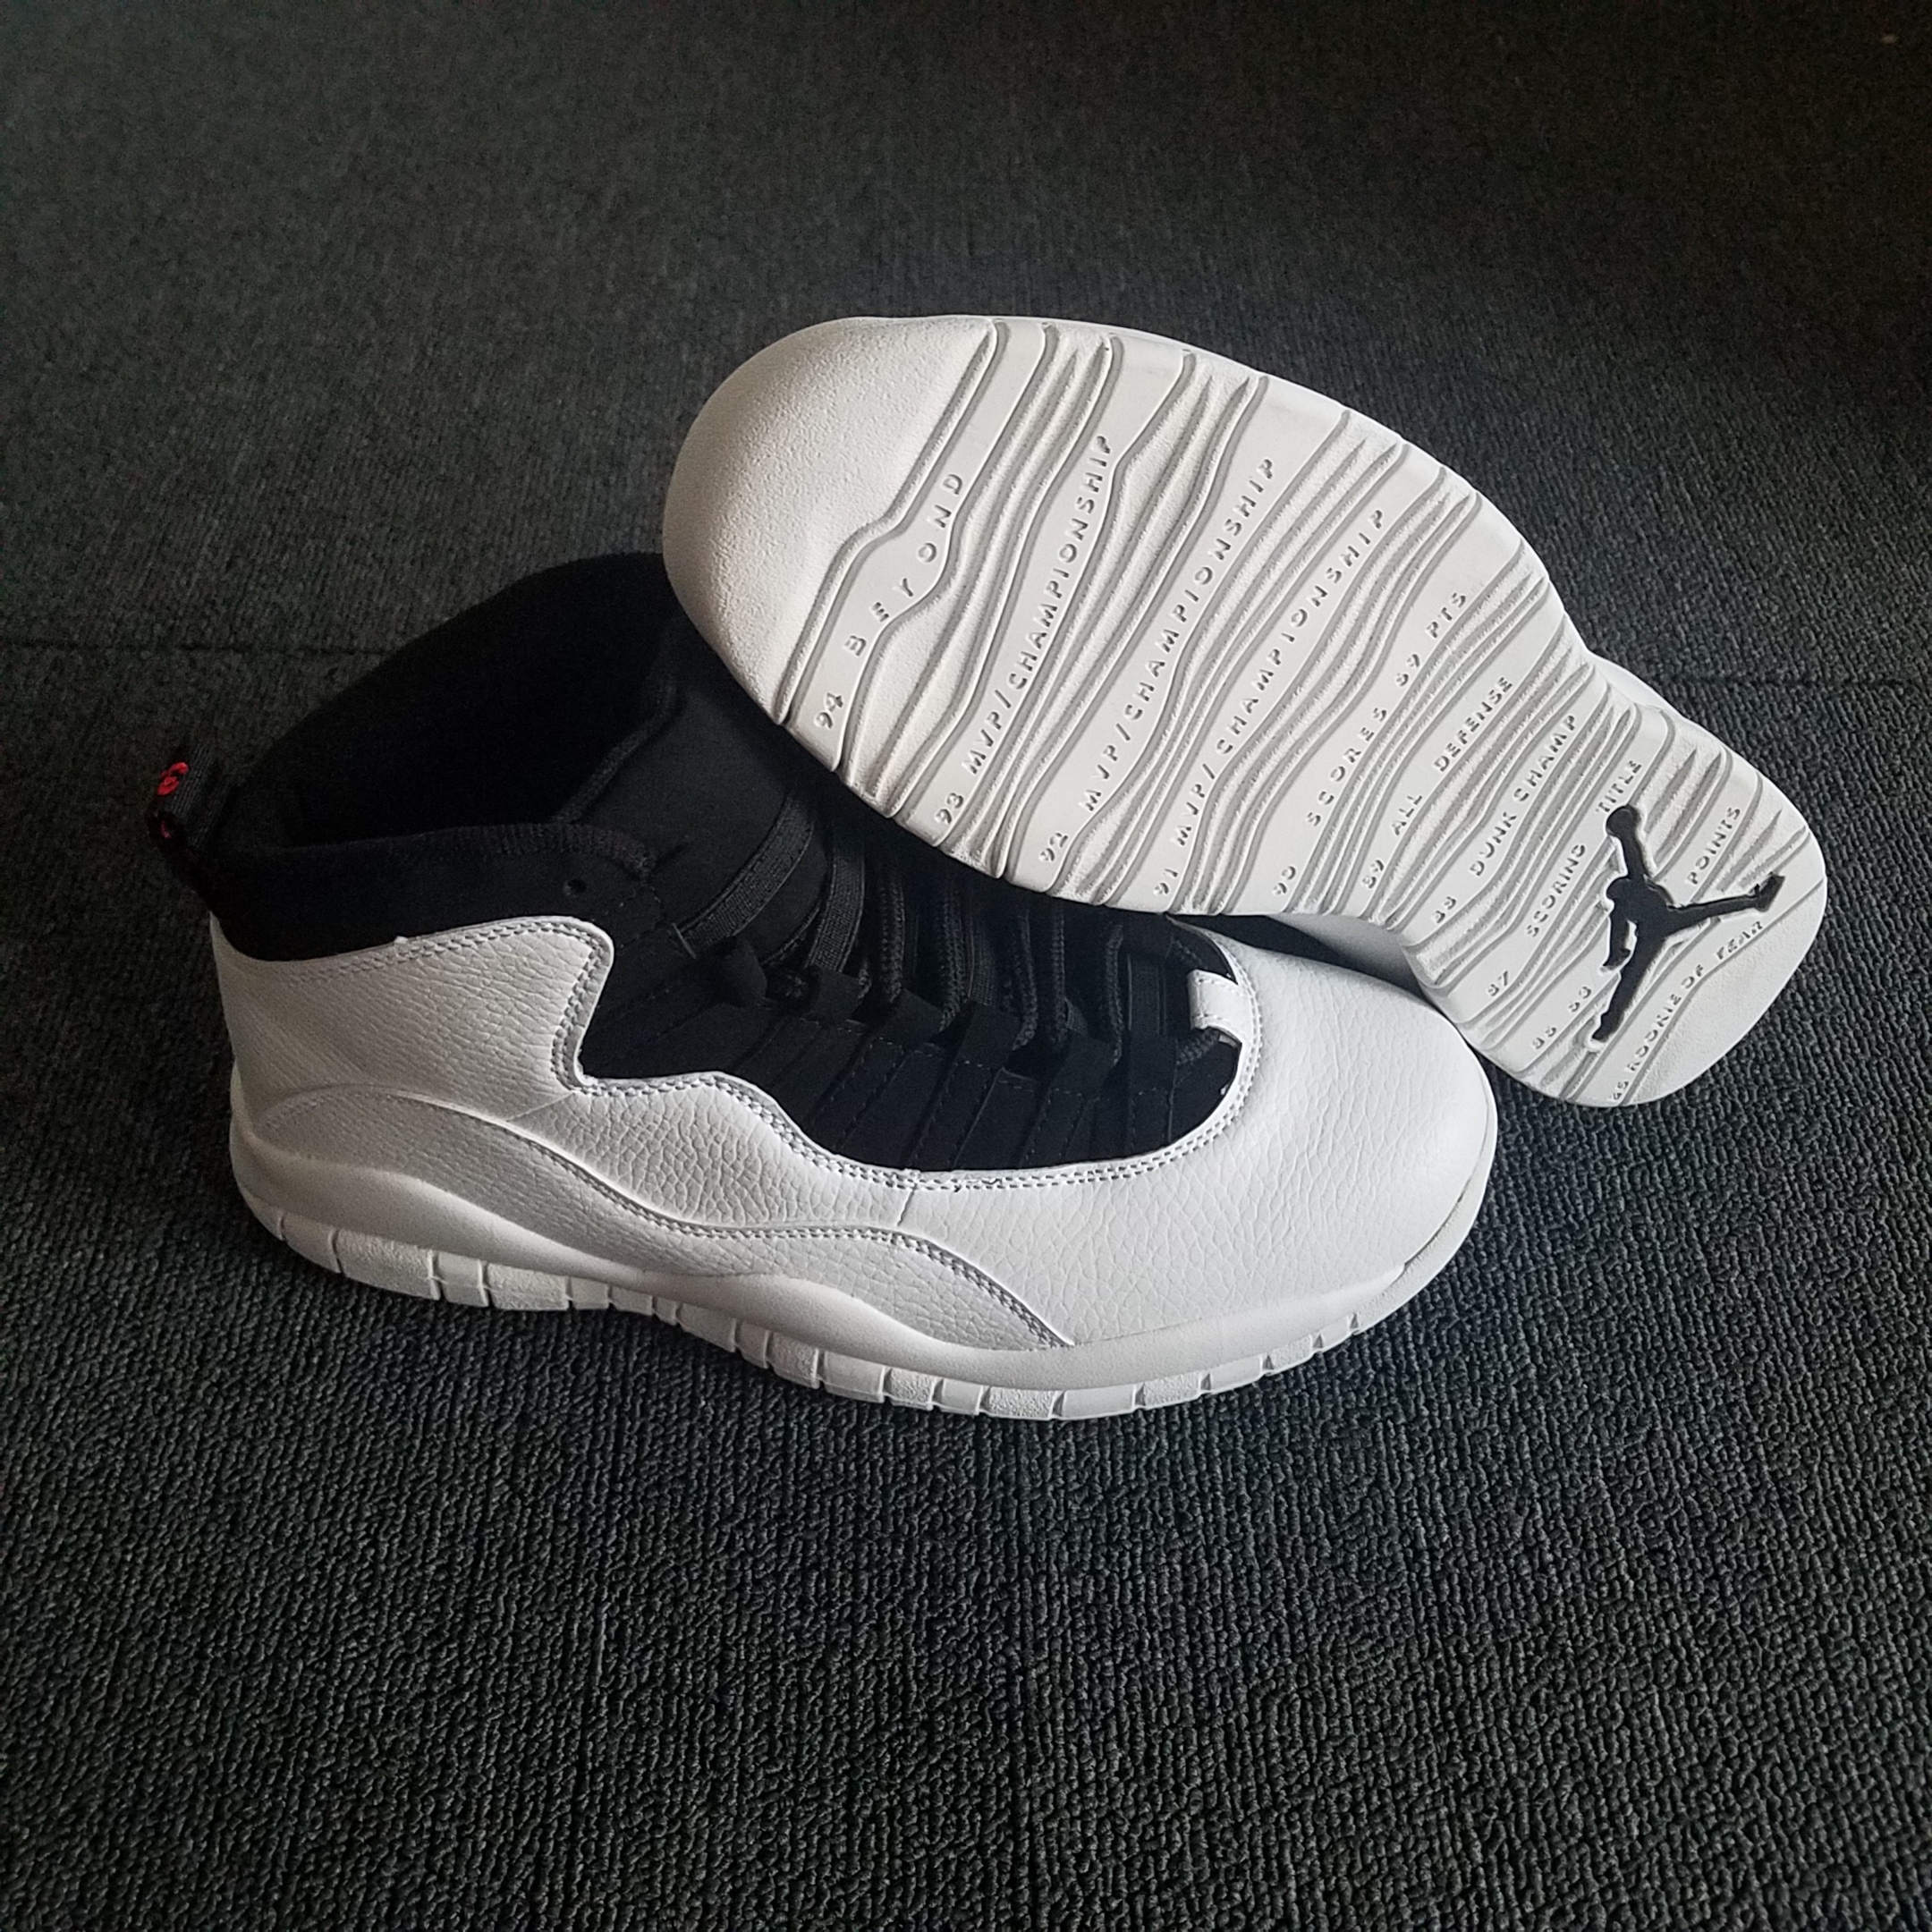 New Air Jordan 10 Oreo Shoes